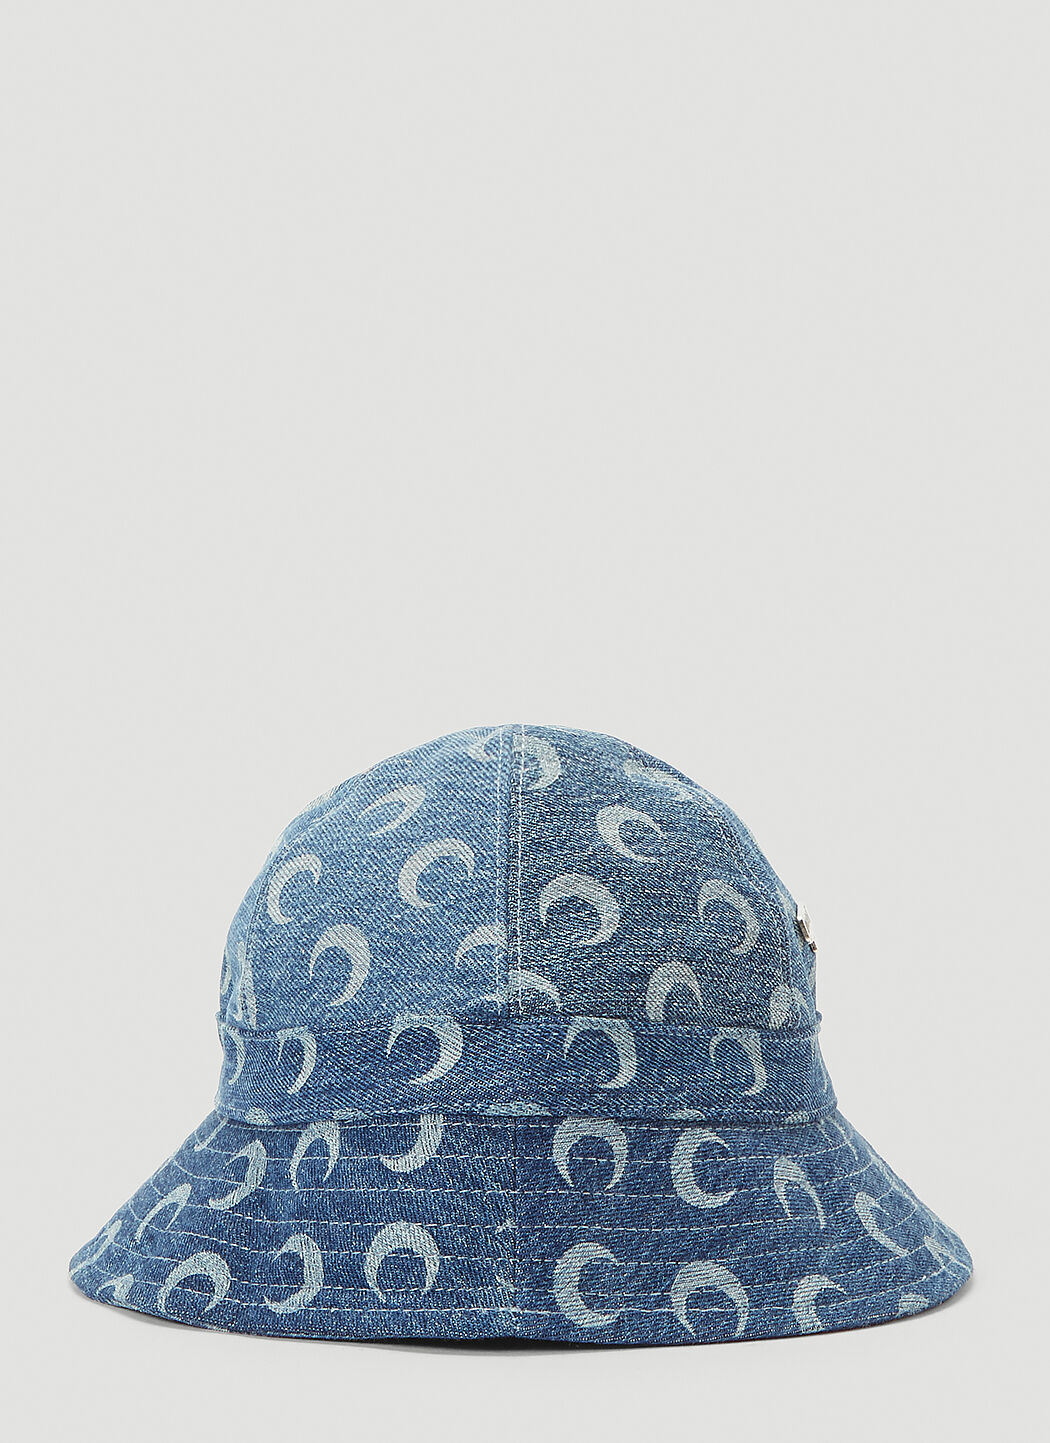 Saint Laurent Crescent Moon Bucket Hat Black sla0235028